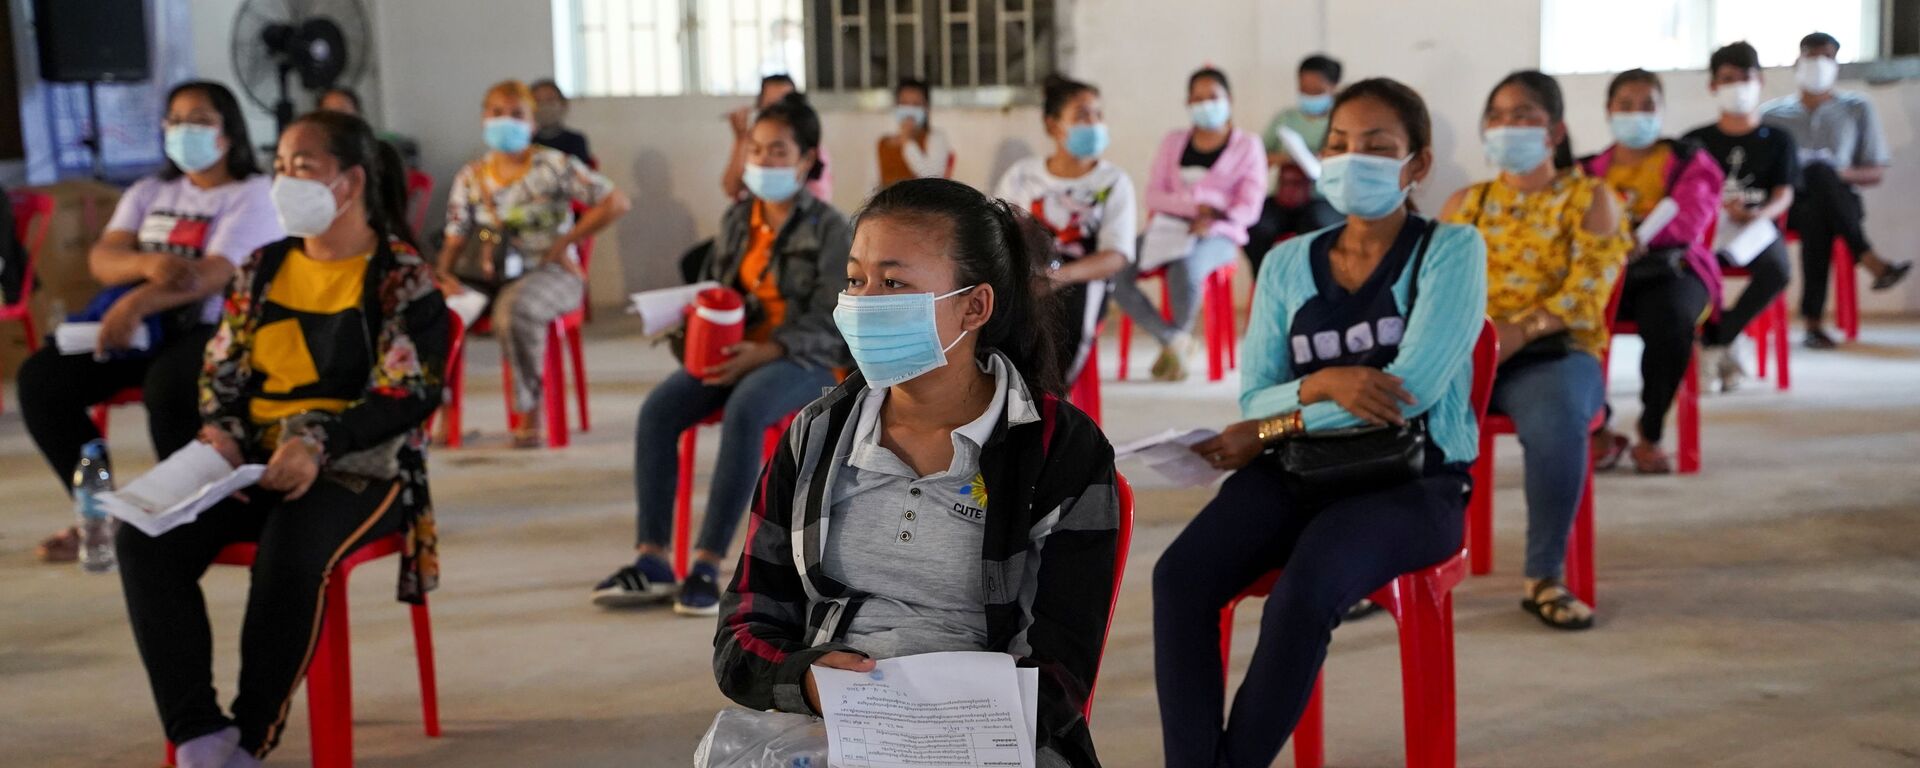 Công nhân viên nhà máy may mặc ở Phnom Penh chủng ngừa phòng bệnh covid bằng vắc xin Sinovac của Trung Quốc. - Sputnik Việt Nam, 1920, 12.04.2021